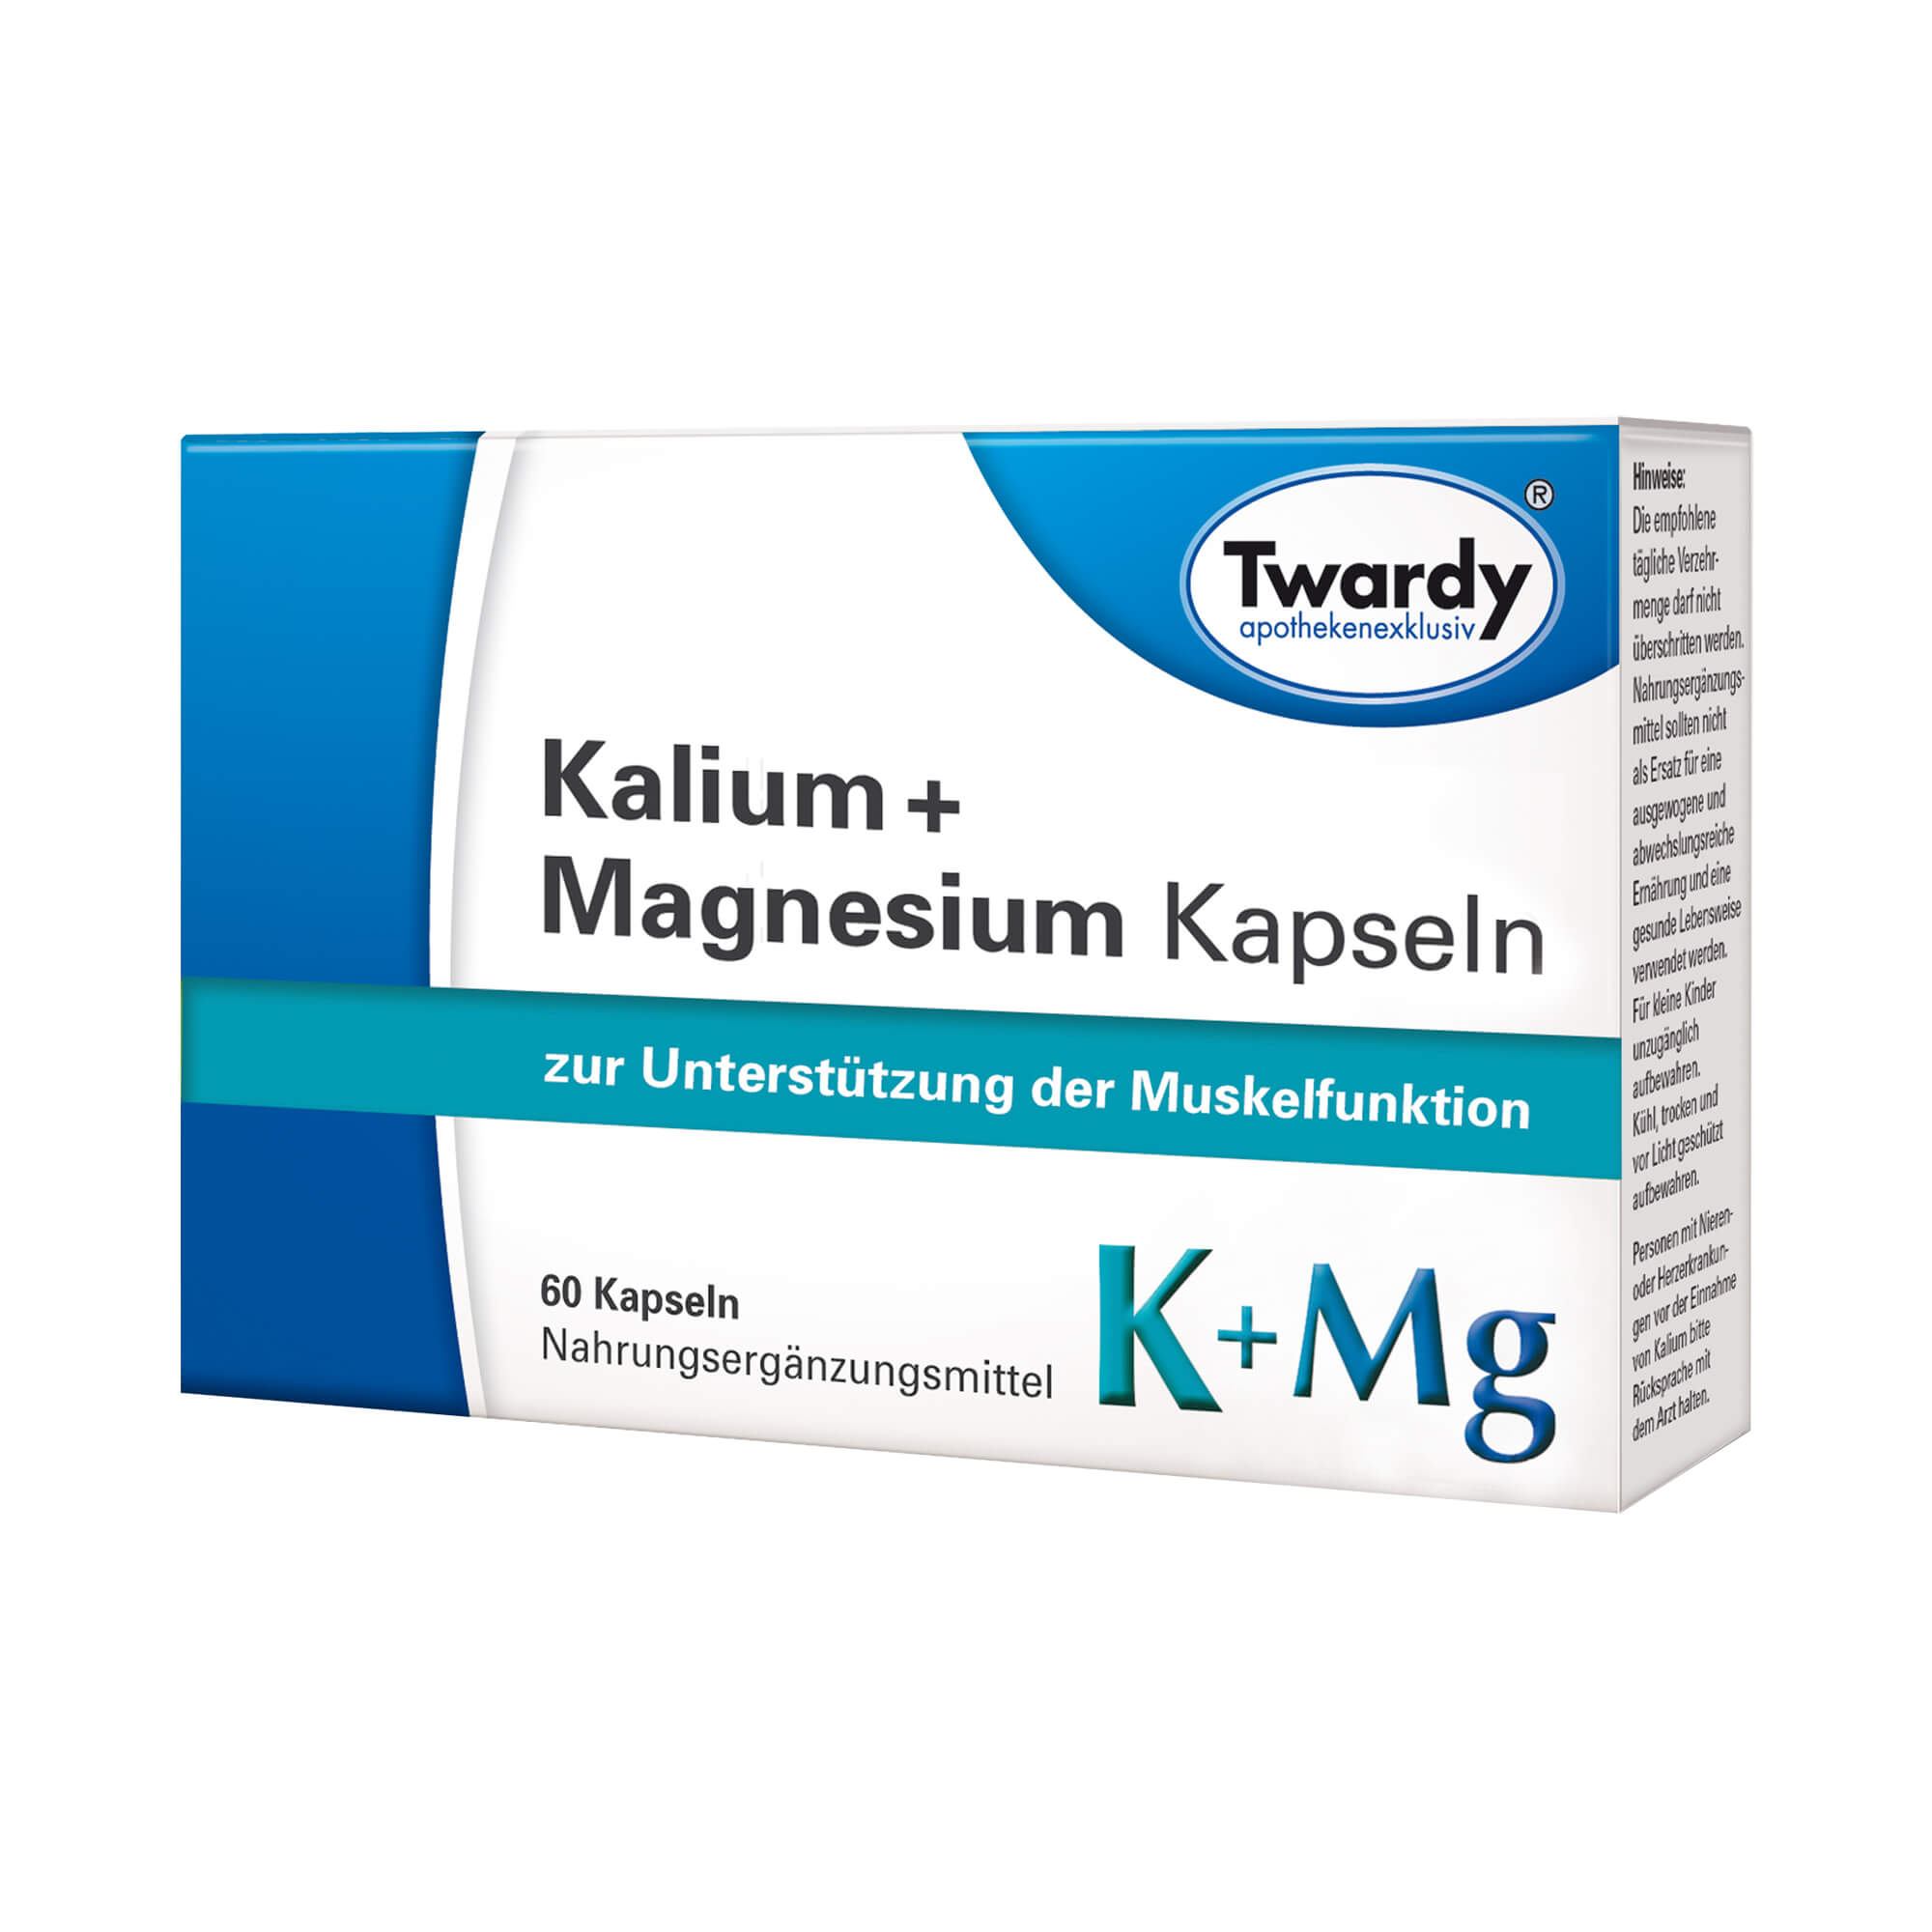 Nahrungsergänzungsmittel mit Kalium und Magnesium.